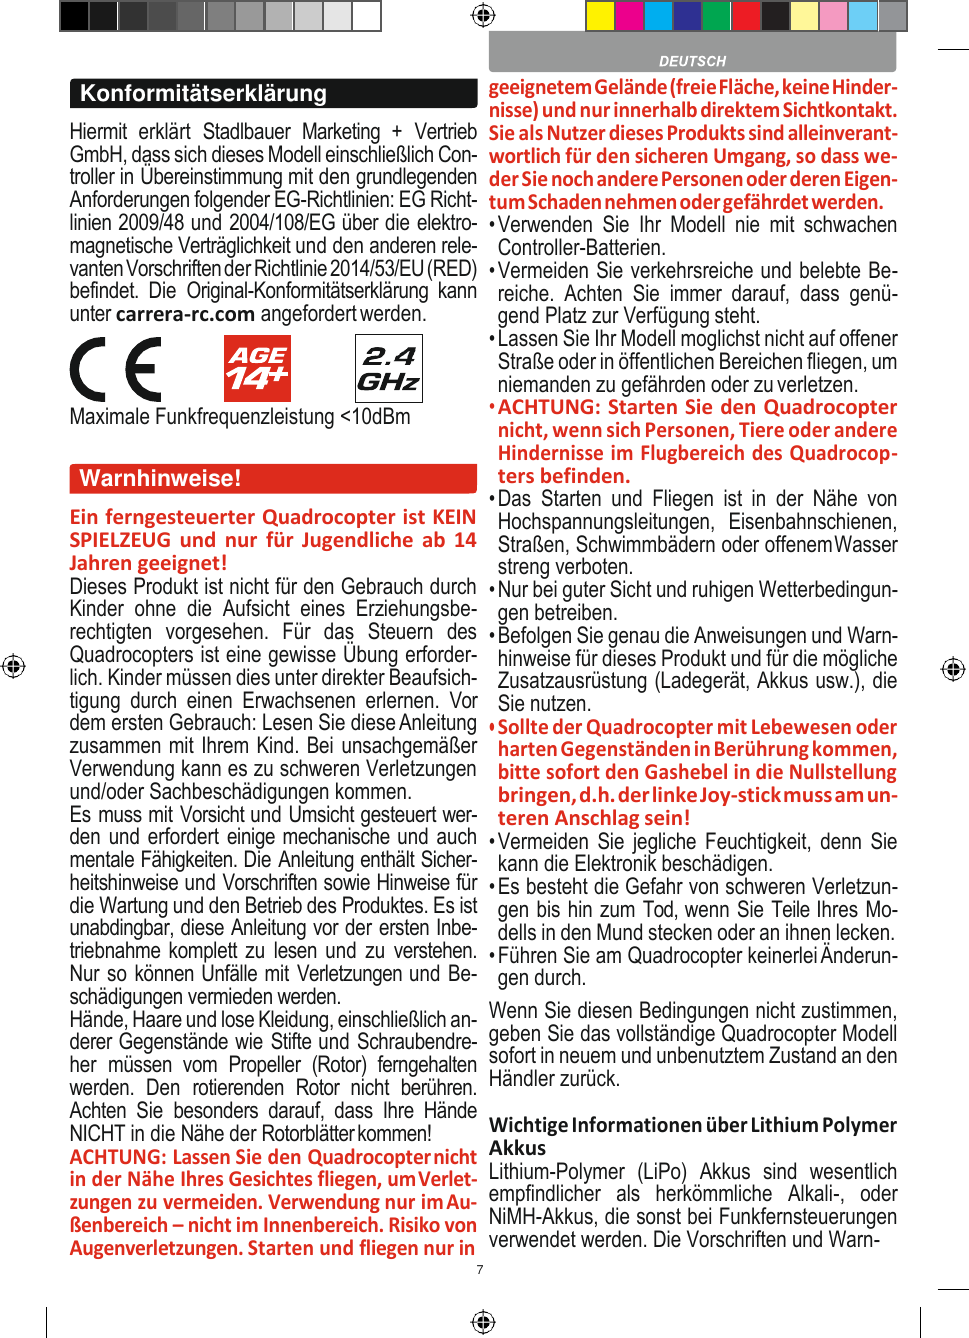 7             Hiermit  erklärt  Stadlbauer  Marketing  +  Vertrieb GmbH, dass sich dieses Modell einschließlich Con- troller in Übereinstimmung mit den grundlegenden Anforderungen folgender EG-Richtlinien: EG Richt- linien 2009/48 und 2004/108/EG über die elektro- magnetische Verträglichkeit und den anderen rele- vanten Vorschriften der Richtlinie 2014/53/EU (RED) befindet.  Die  Original-Konformitätserklärung  kann unter carrera-rc.com angefordert werden. Maximale Funkfrequenzleistung &lt;10dBm  Ein ferngesteuerter Quadrocopter ist KEIN SPIELZEUG und  nur  für  Jugendliche  ab  14 Jahren geeignet! Dieses Produkt ist nicht für den Gebrauch durch Kinder  ohne  die  Aufsicht  eines  Erziehungsbe- rechtigten  vorgesehen.  Für  das  Steuern  des Quadrocopters ist eine gewisse Übung erforder- lich. Kinder müssen dies unter direkter Beaufsich- tigung  durch  einen  Erwachsenen  erlernen.  Vor dem ersten Gebrauch: Lesen Sie diese Anleitung zusammen mit Ihrem Kind. Bei unsachgemäßer Verwendung kann es zu schweren Verletzungen und/oder Sachbeschädigungen kommen. Es muss mit Vorsicht und Umsicht gesteuert wer- den und erfordert einige mechanische und auch mentale Fähigkeiten. Die Anleitung enthält Sicher- heitshinweise und Vorschriften sowie Hinweise für die Wartung und den Betrieb des Produktes. Es ist unabdingbar, diese Anleitung vor der ersten Inbe- triebnahme komplett zu  lesen und  zu verstehen. Nur so können Unfälle mit Verletzungen und Be- schädigungen vermieden werden. Hände, Haare und lose Kleidung, einschließlich an- derer Gegenstände wie Stifte und Schraubendre- her  müssen  vom  Propeller  (Rotor)  ferngehalten werden.  Den  rotierenden  Rotor  nicht  berühren. Achten  Sie  besonders  darauf,  dass  Ihre  Hände NICHT in die Nähe der Rotorblätter kommen! ACHTUNG: Lassen Sie den Quadrocopter nicht in der Nähe Ihres Gesichtes fliegen, um Verlet- zungen zu vermeiden. Verwendung nur im Au- ßenbereich – nicht im Innenbereich. Risiko von Augenverletzungen. Starten und fliegen nur in geeignetem Gelände (freie Fläche, keine Hinder- nisse) und nur innerhalb direktem Sichtkontakt. Sie als Nutzer dieses Produkts sind alleinverant- wortlich für den sicheren Umgang, so dass we- der Sie noch andere Personen oder deren Eigen- tum Schaden nehmen oder gefährdet werden. • Verwenden  Sie  Ihr  Modell  nie  mit  schwachen Controller-Batterien. • Vermeiden Sie verkehrsreiche und belebte Be- reiche.  Achten  Sie  immer  darauf,  dass  genü- gend Platz zur Verfügung steht. • Lassen Sie Ihr Modell moglichst nicht auf offener Straße oder in öffentlichen Bereichen fliegen, um niemanden zu gefährden oder zu verletzen. • ACHTUNG: Starten Sie den Quadrocopter nicht, wenn sich Personen, Tiere oder andere Hindernisse im Flugbereich des Quadrocop- ters befinden. • Das  Starten  und  Fliegen  ist  in  der  Nähe  von Hochspannungsleitungen,  Eisenbahnschienen, Straßen, Schwimmbädern oder offenem Wasser streng verboten. • Nur bei guter Sicht und ruhigen Wetterbedingun- gen betreiben. • Befolgen Sie genau die Anweisungen und Warn- hinweise für dieses Produkt und für die mögliche Zusatzausrüstung (Ladegerät, Akkus usw.), die Sie nutzen. • Sollte der Quadrocopter mit Lebewesen oder harten Gegenständen in Berührung kommen, bitte sofort den Gashebel in die Nullstellung bringen, d.h. der linke Joy-stick muss am un- teren Anschlag sein! • Vermeiden Sie jegliche Feuchtigkeit,  denn Sie kann die Elektronik beschädigen. • Es besteht die Gefahr von schweren Verletzun- gen bis hin zum Tod, wenn Sie Teile Ihres Mo- dells in den Mund stecken oder an ihnen lecken. • Führen Sie am Quadrocopter keinerlei Änderun- gen durch. Wenn Sie diesen Bedingungen nicht zustimmen, geben Sie das vollständige Quadrocopter Modell sofort in neuem und unbenutztem Zustand an den Händler zurück. Wichtige Informationen über Lithium Polymer Akkus Lithium-Polymer  (LiPo)  Akkus  sind  wesentlich empfindlicher  als  herkömmliche  Alkali-,  oder NiMH-Akkus, die sonst bei Funkfernsteuerungen verwendet werden. Die Vorschriften und Warn-                         Konformitätserklärung Warnhinweise! 